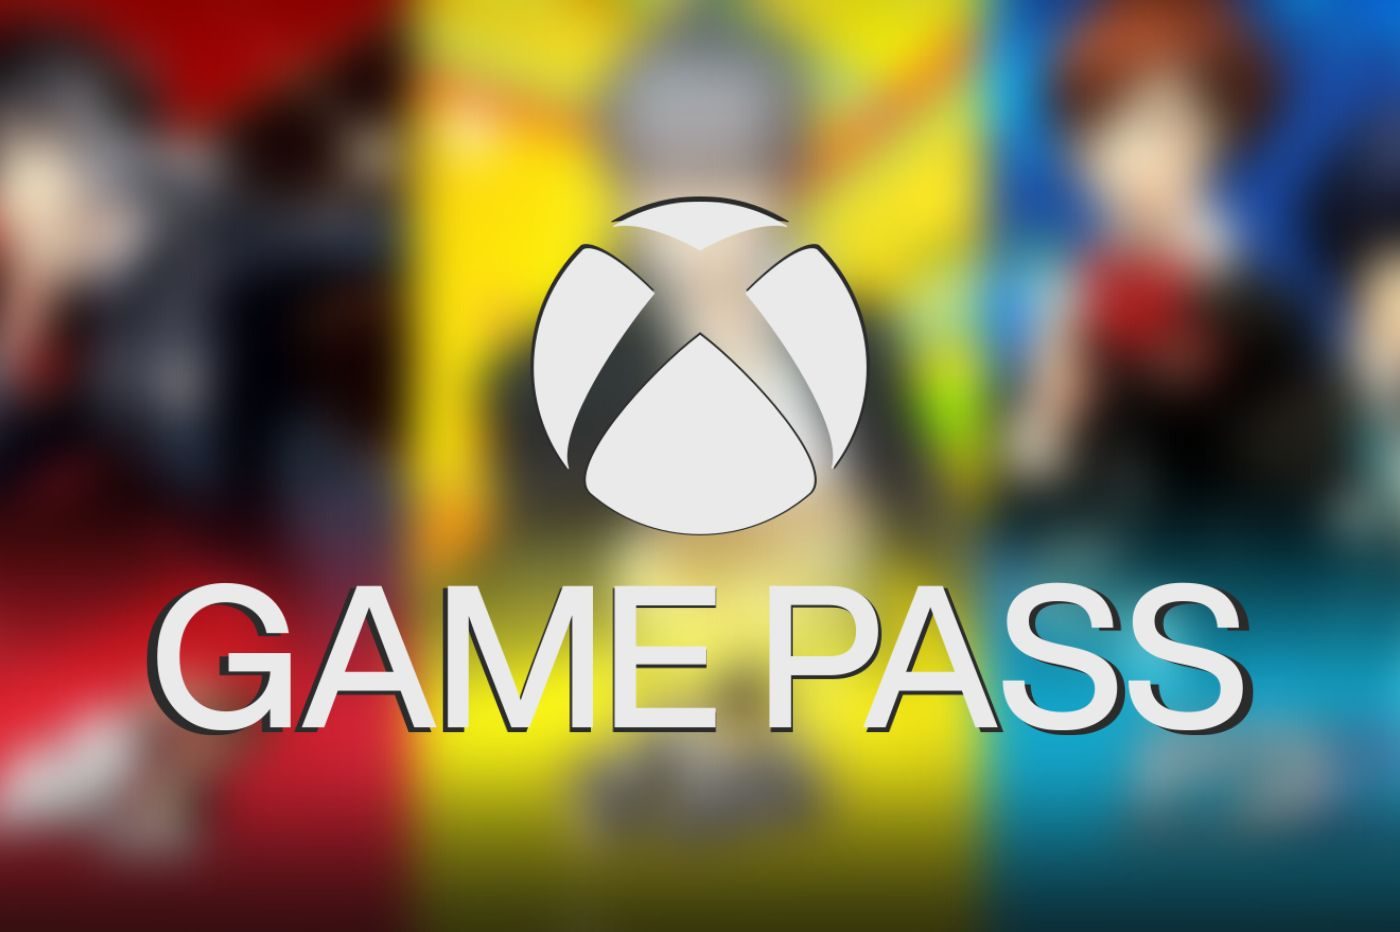 Logo Game Pass devant les images de Persona 3, 4 et 5 floutées en fond